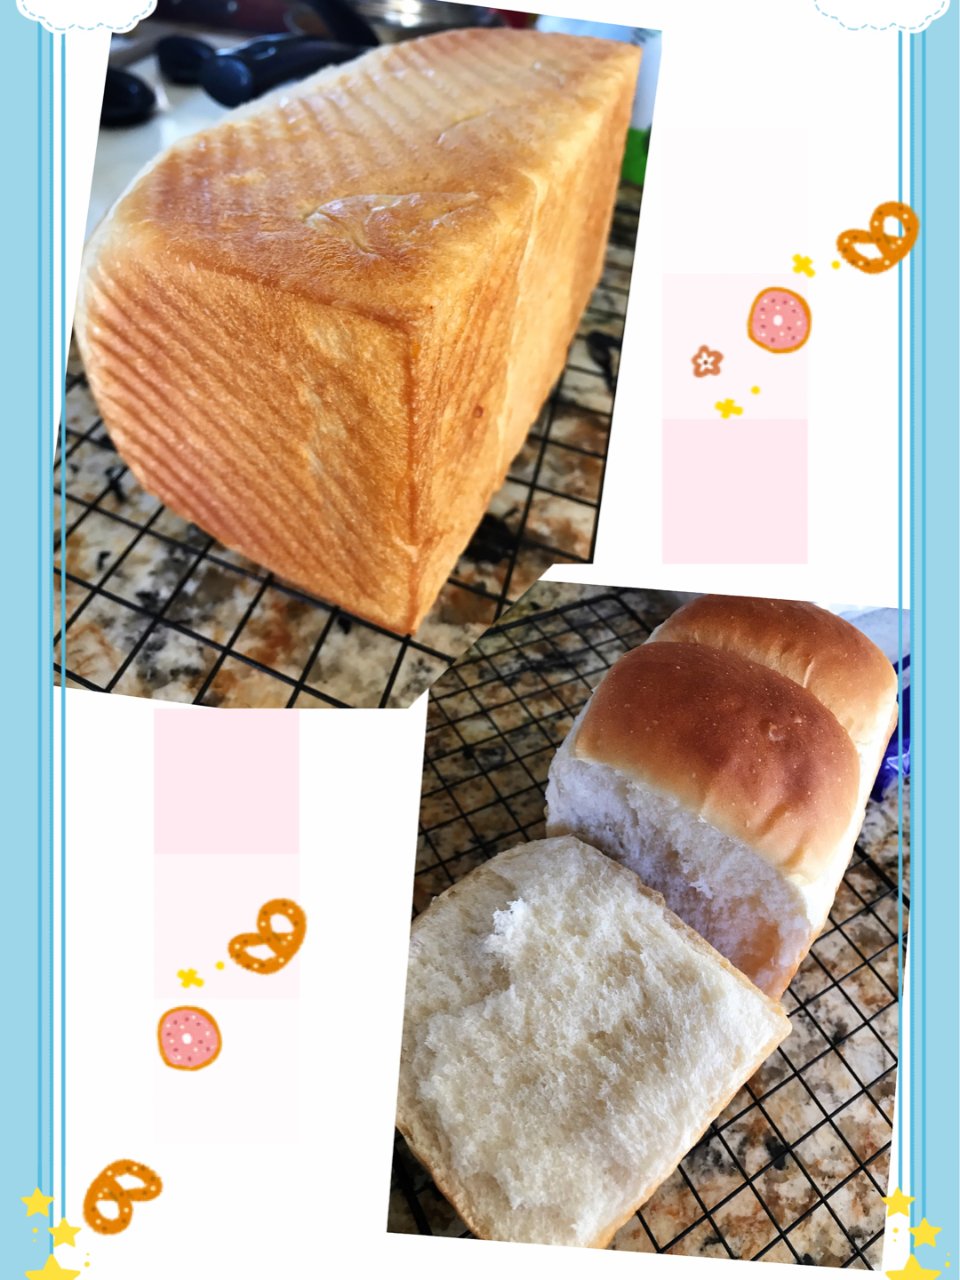 面包机版拉丝面包🍞...